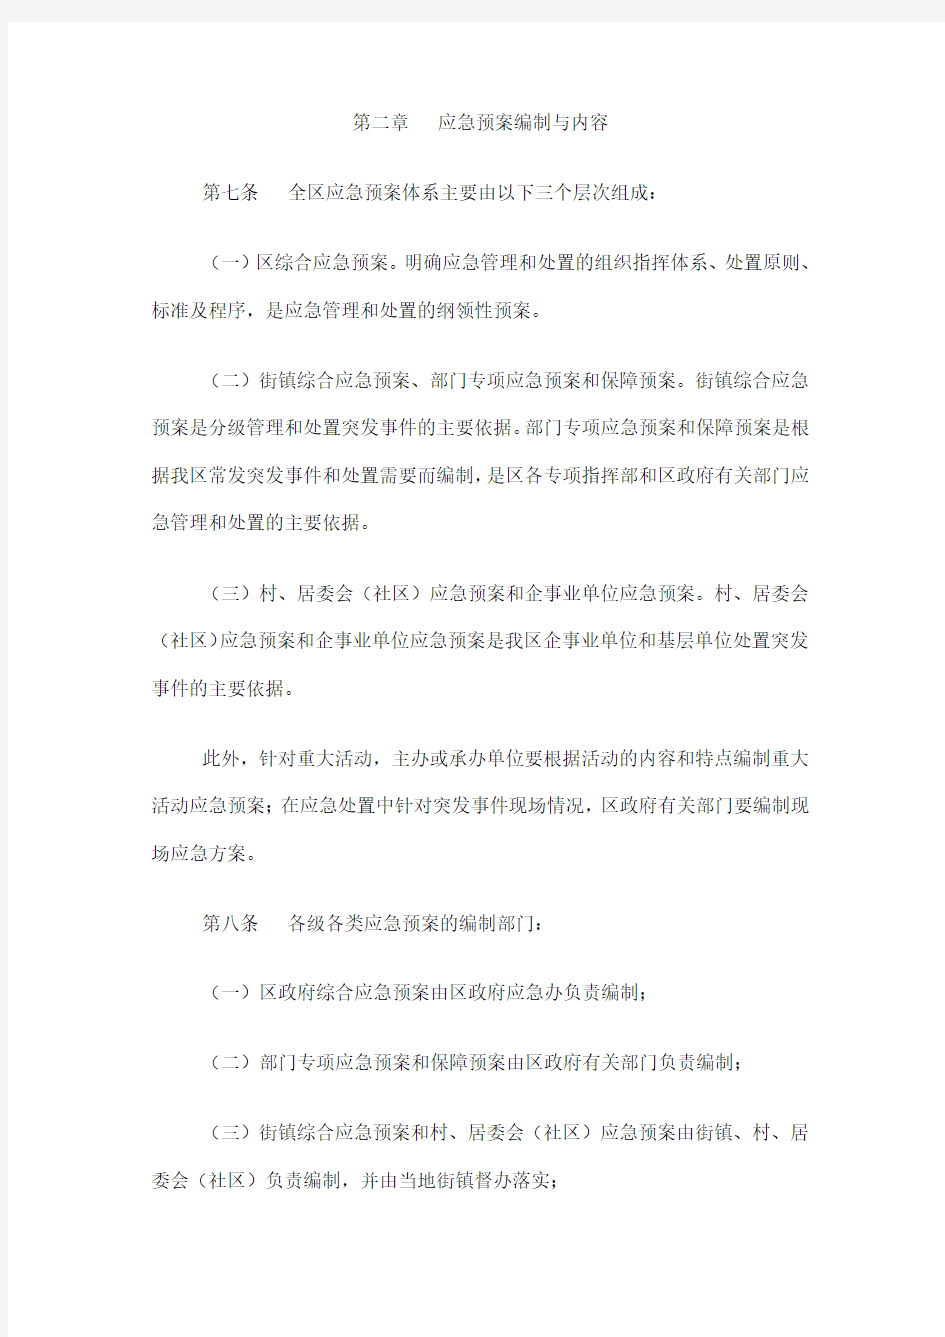 重庆市江北区突发事件应急预案管理办法